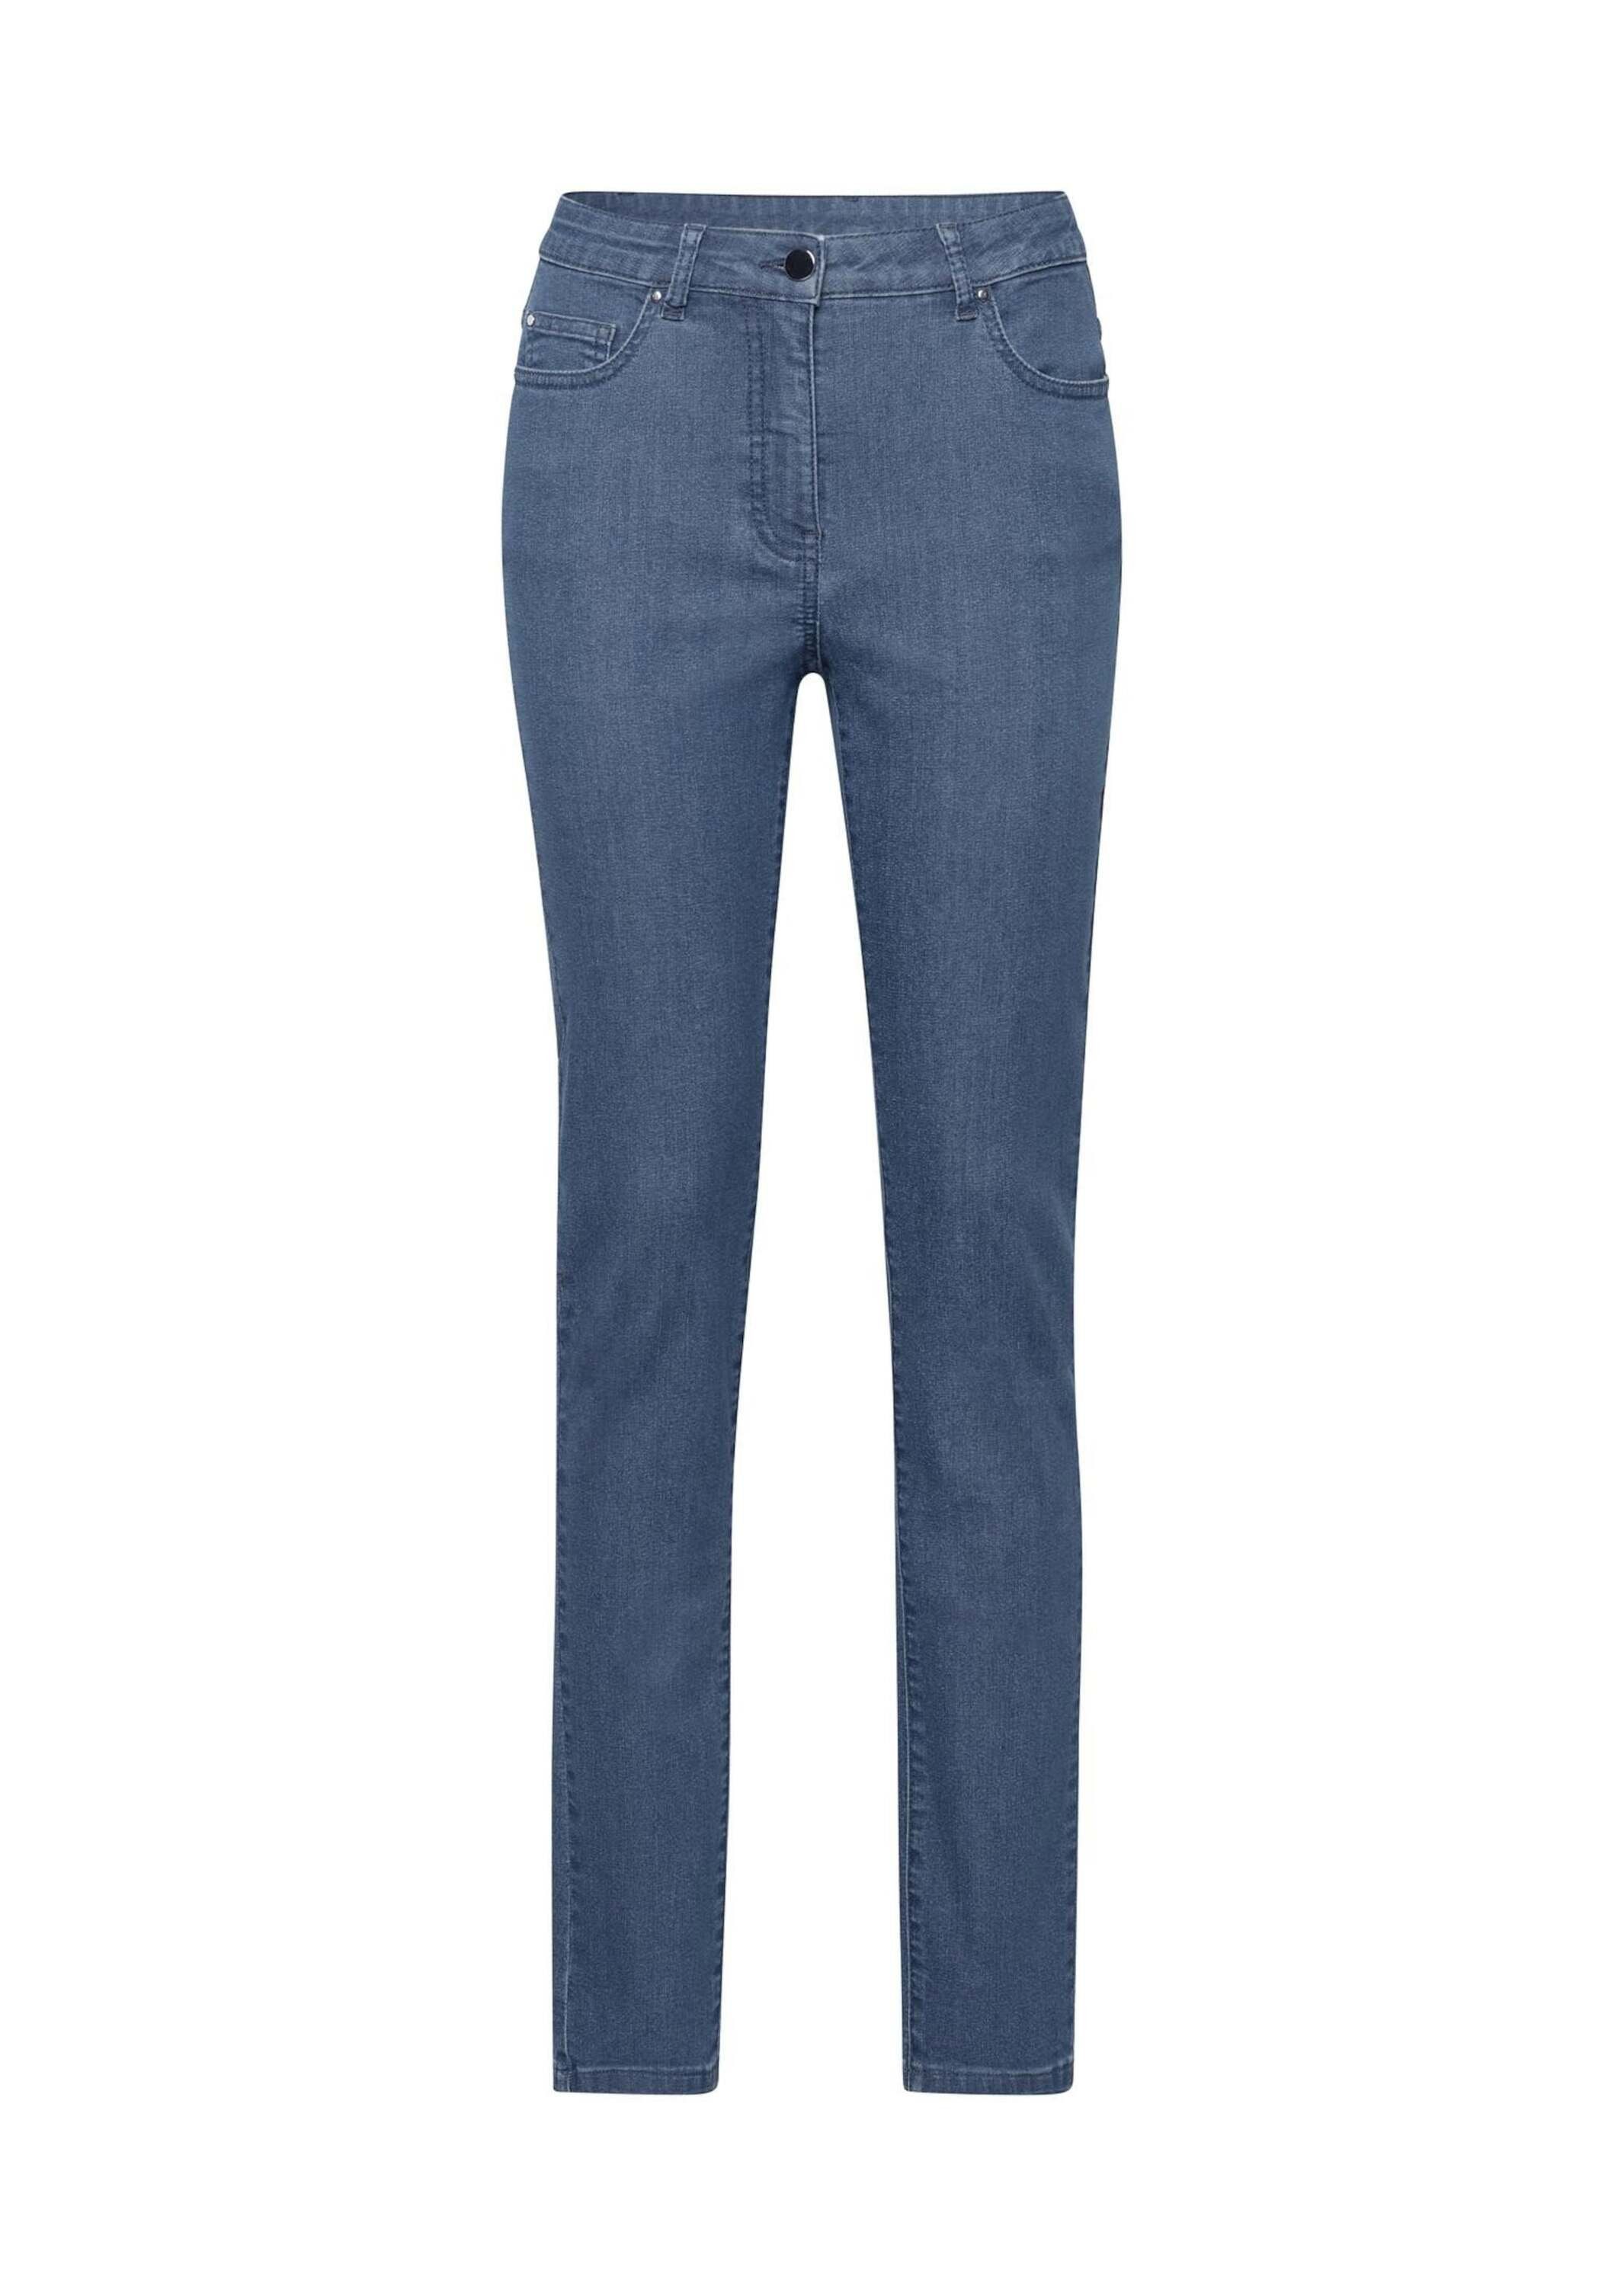 Jeans Kurzgröße: GOLDNER Bequeme hellblau